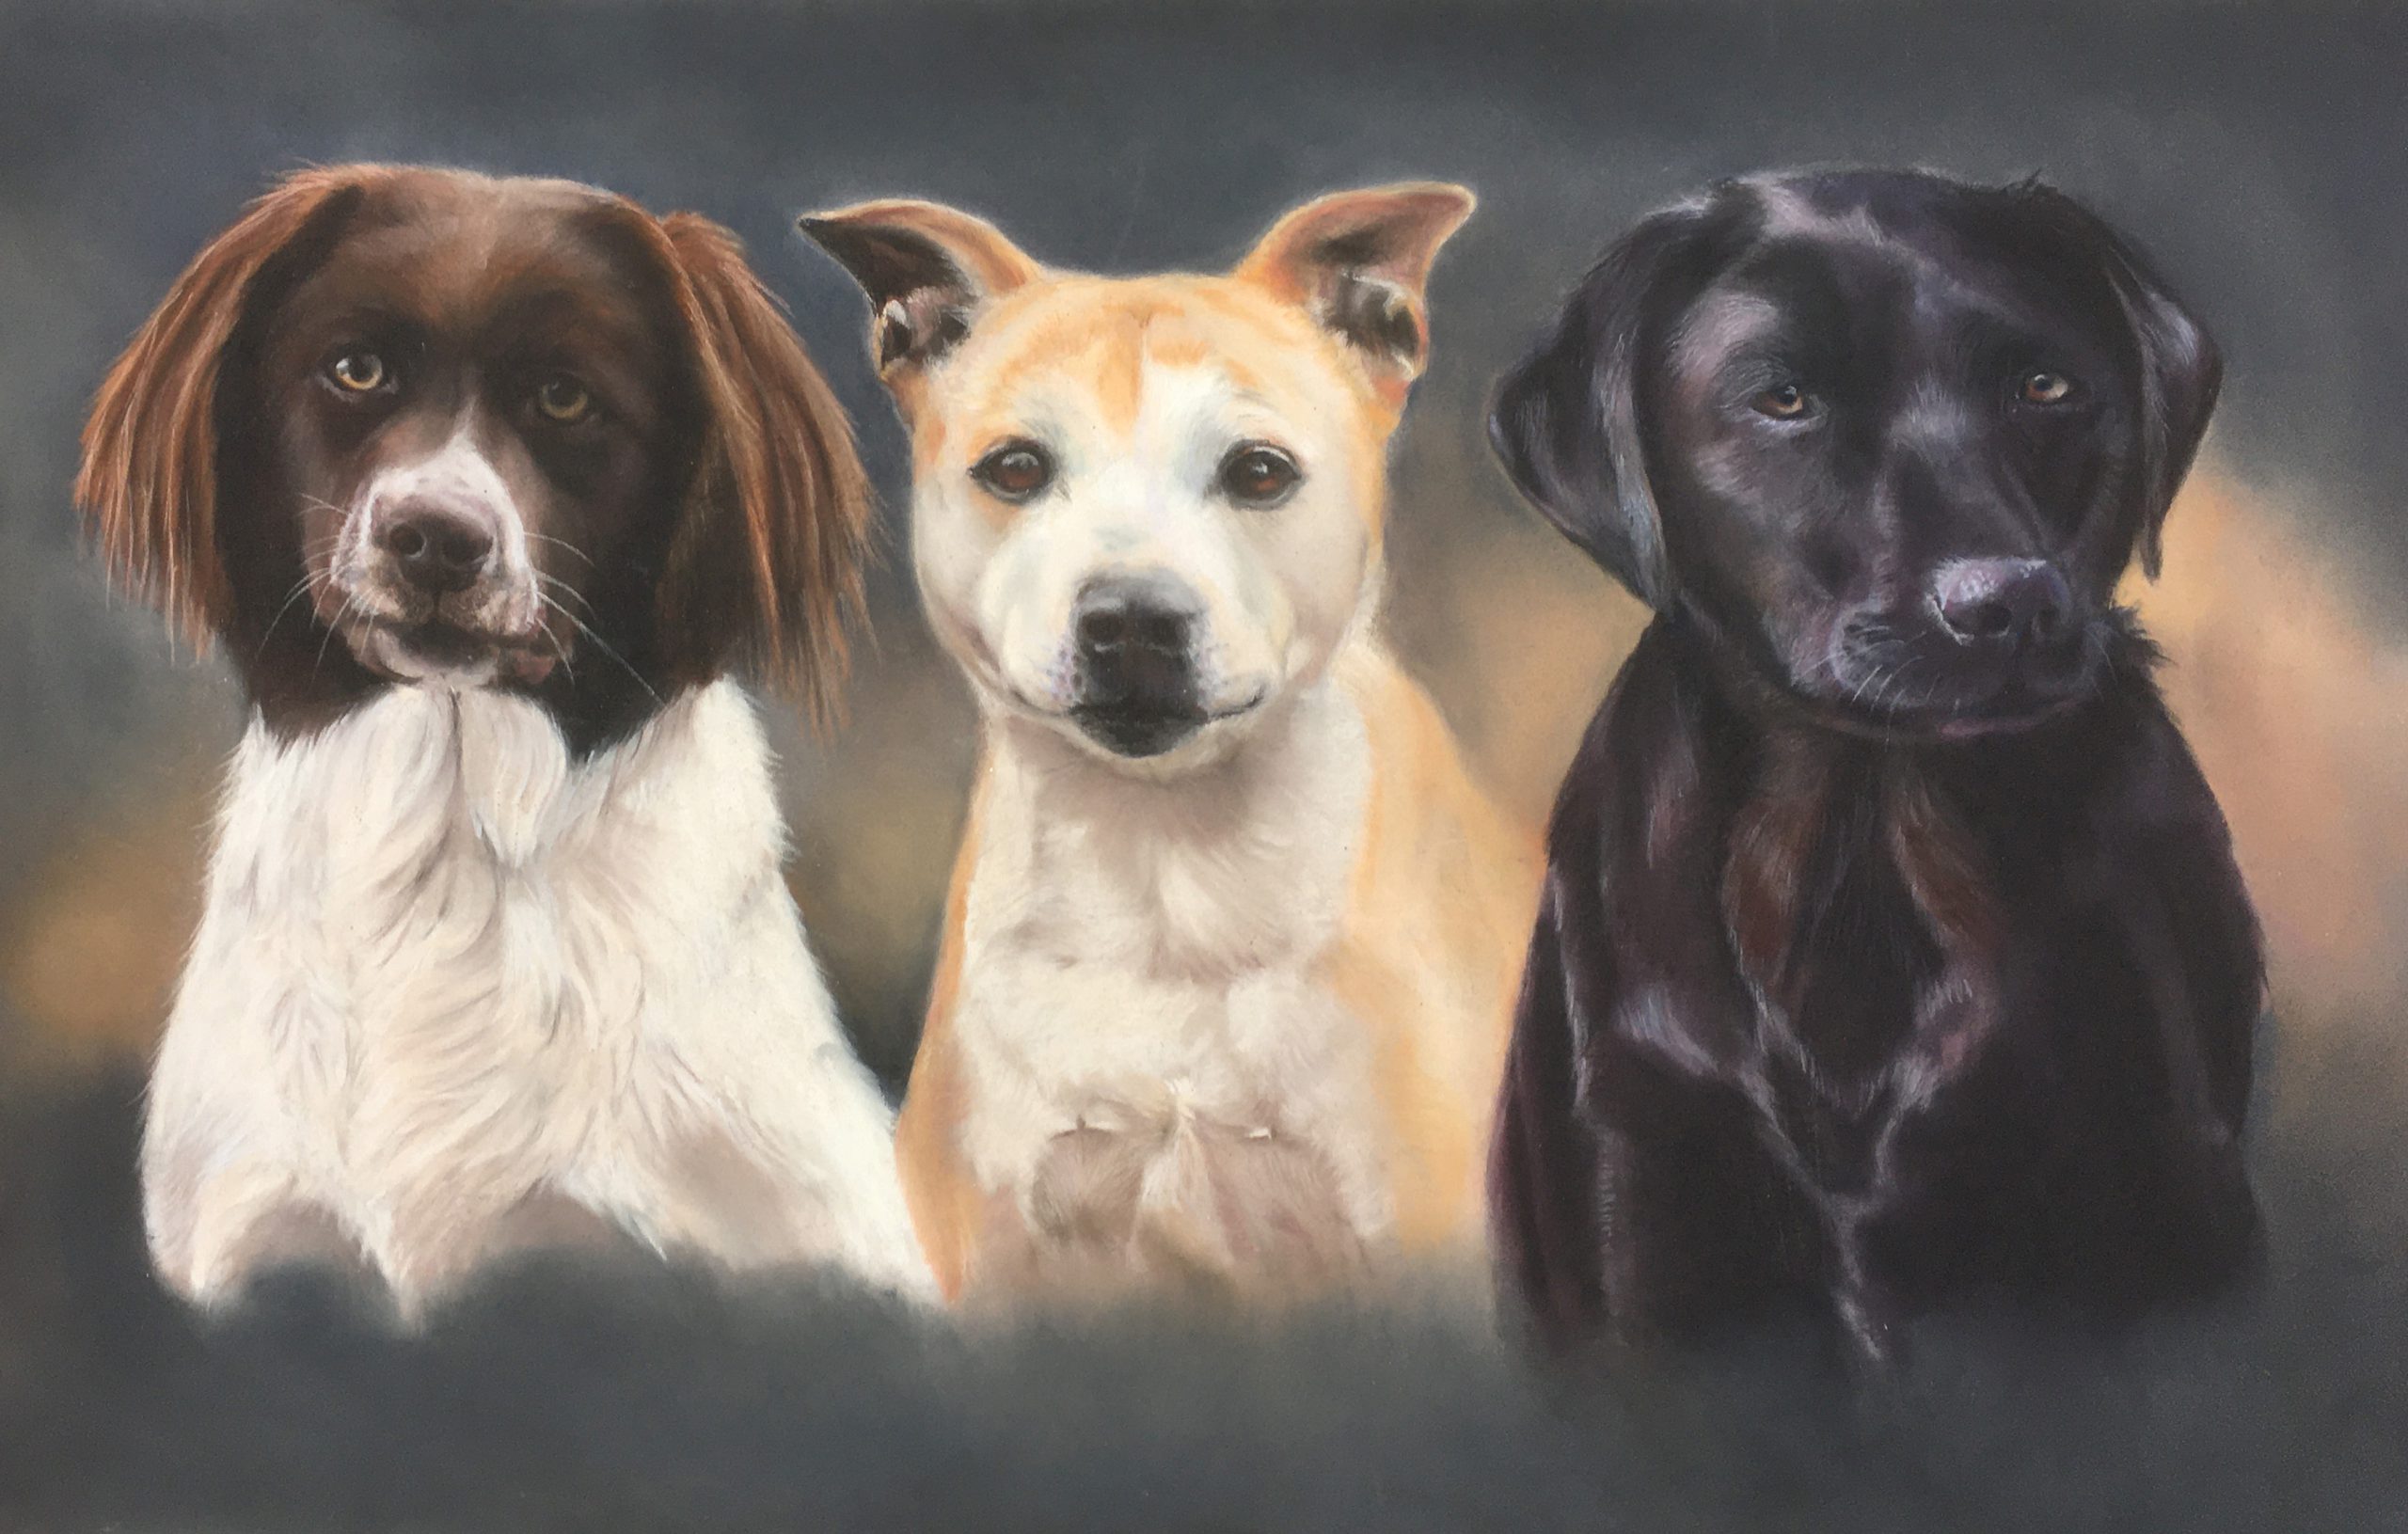 Registratie Realistisch toezicht houden op Portret van 3 honden - Artelly